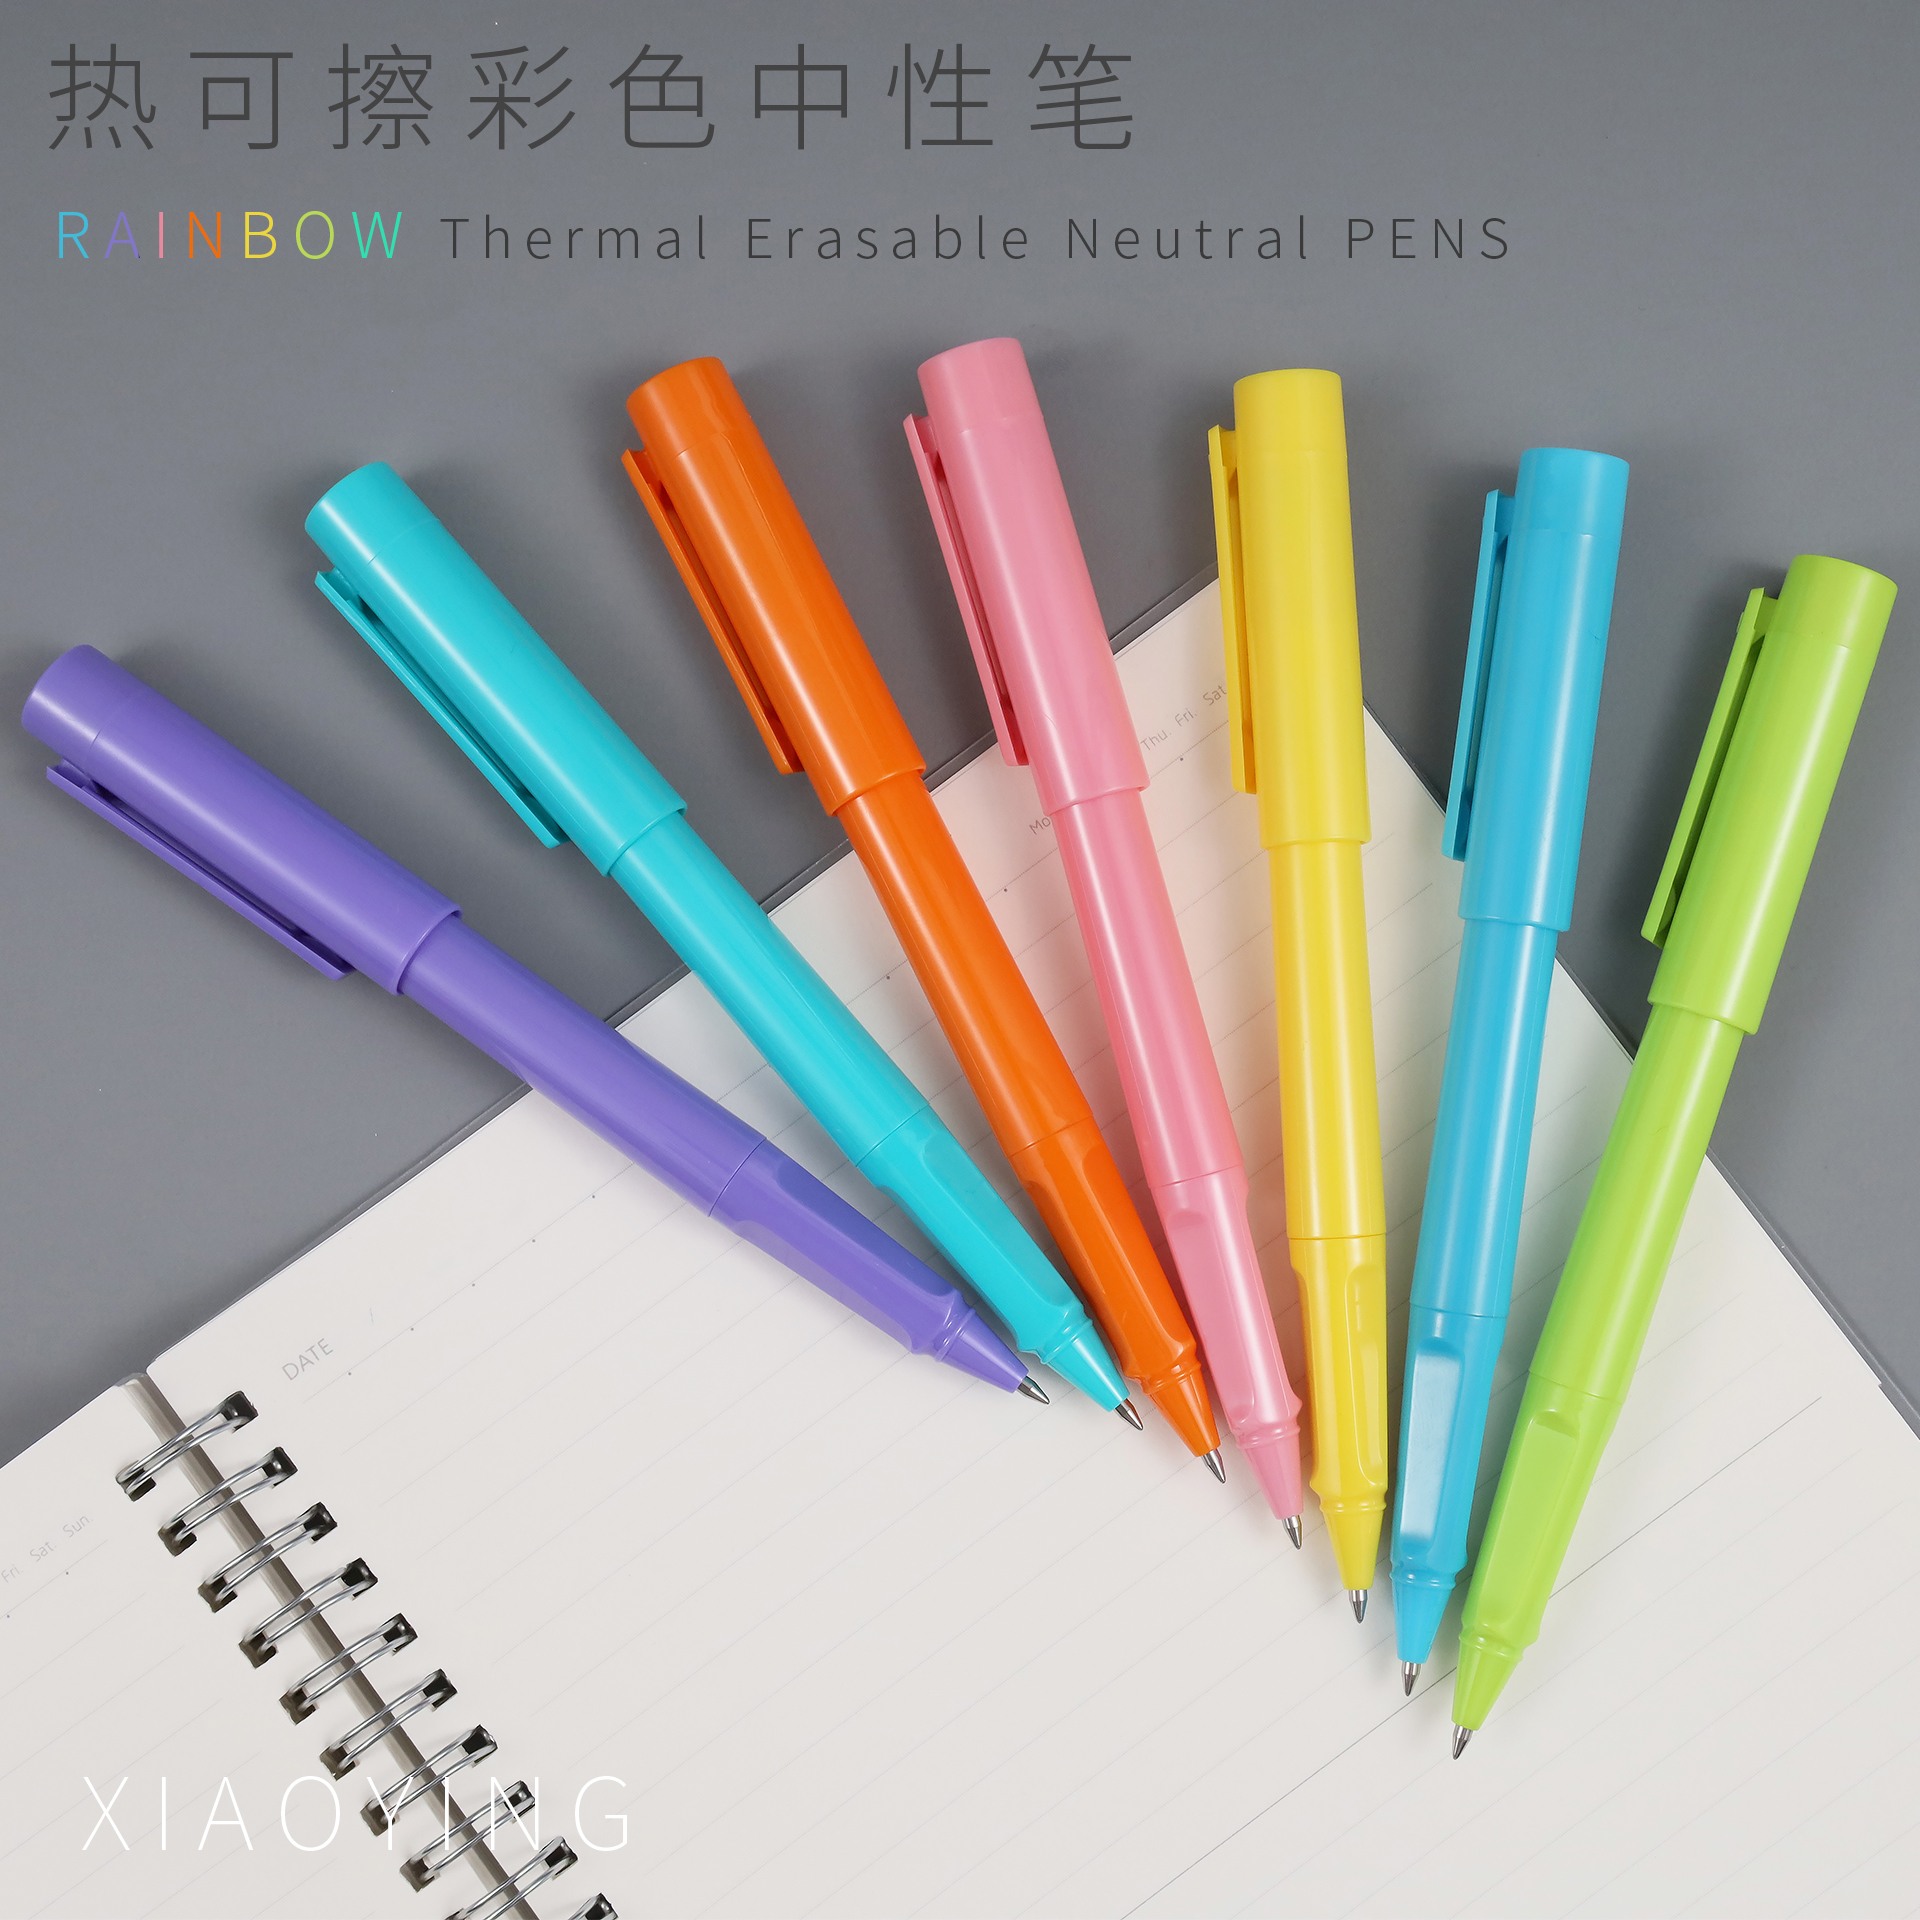 山东小赢创意供应热敏可擦彩色中性笔 可擦笔 擦写笔 彩色笔 热敏可擦彩色中性笔